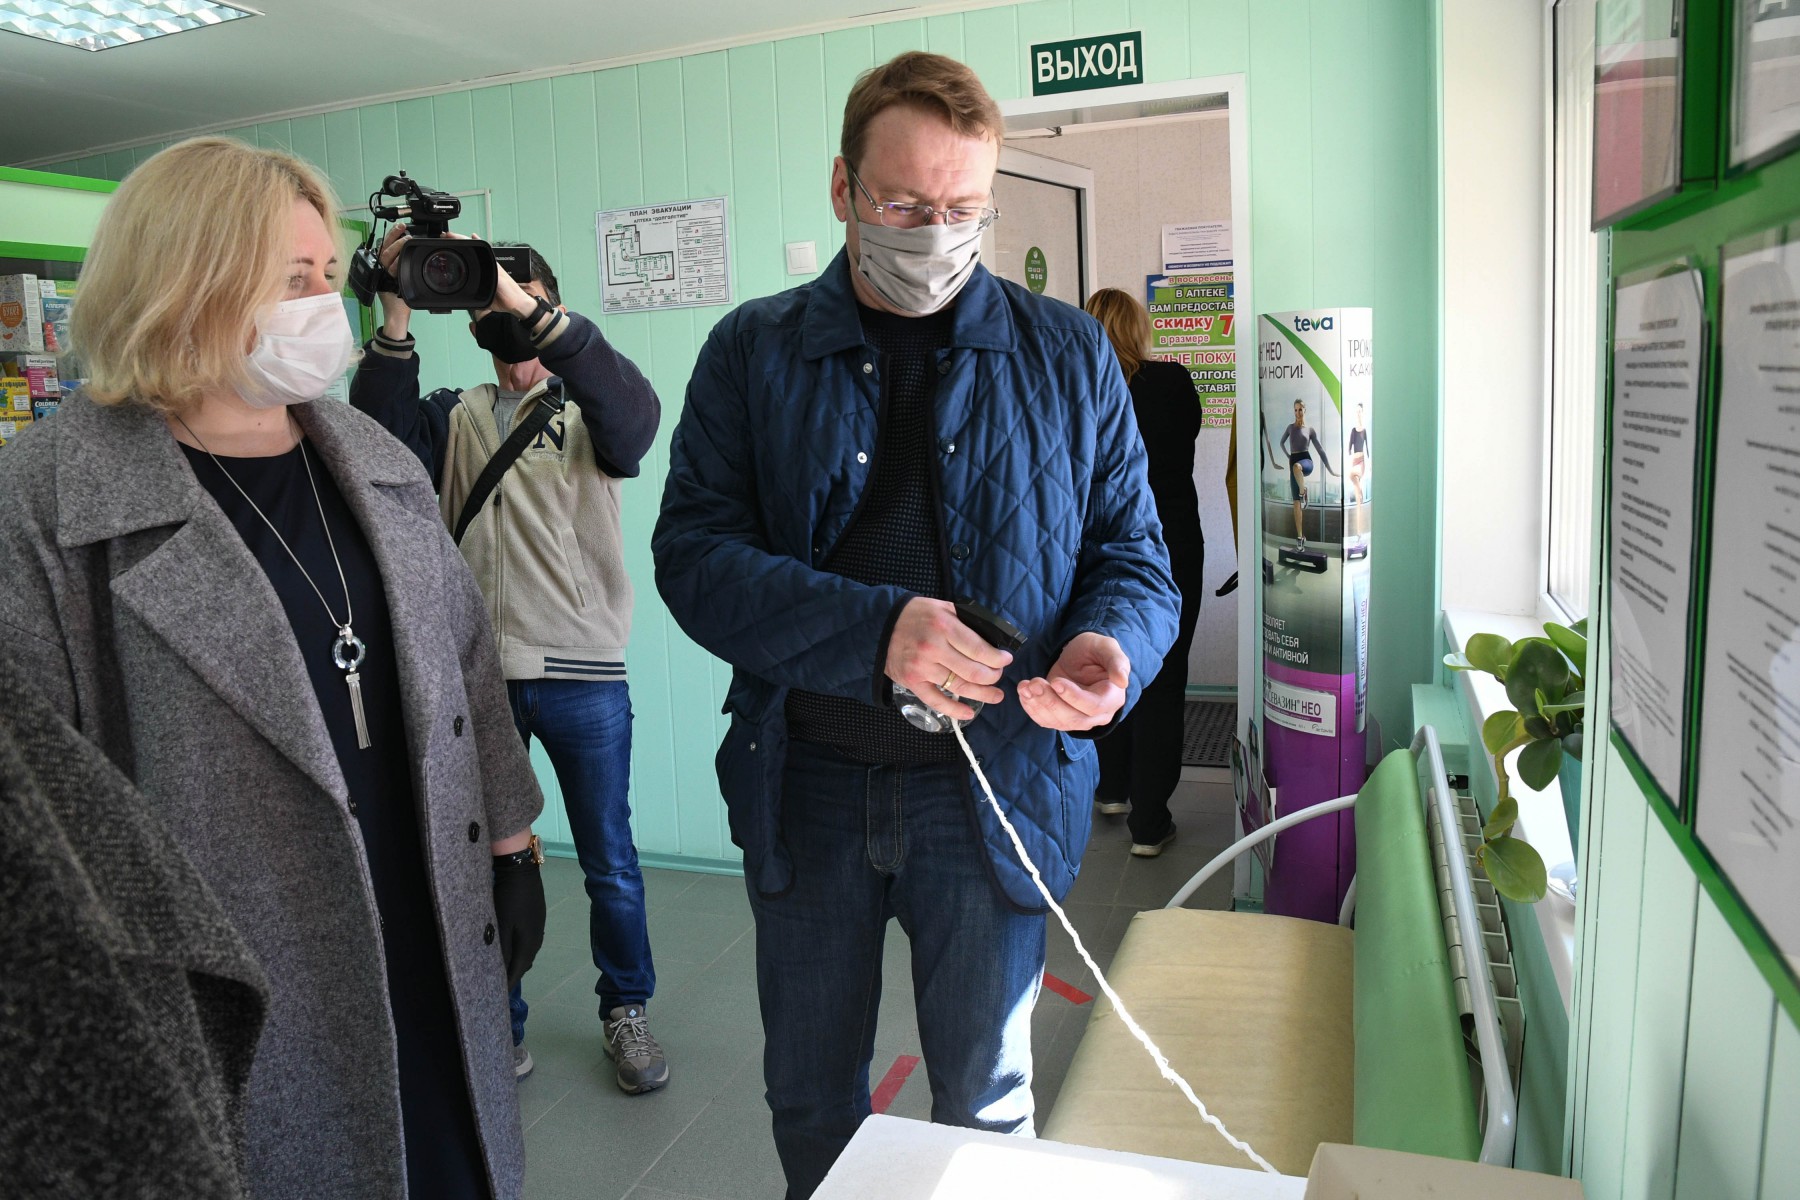 Алексей КУзнецов оценил качество санитайзера в аптеке. Фото Владимира Коцюбы-Белых